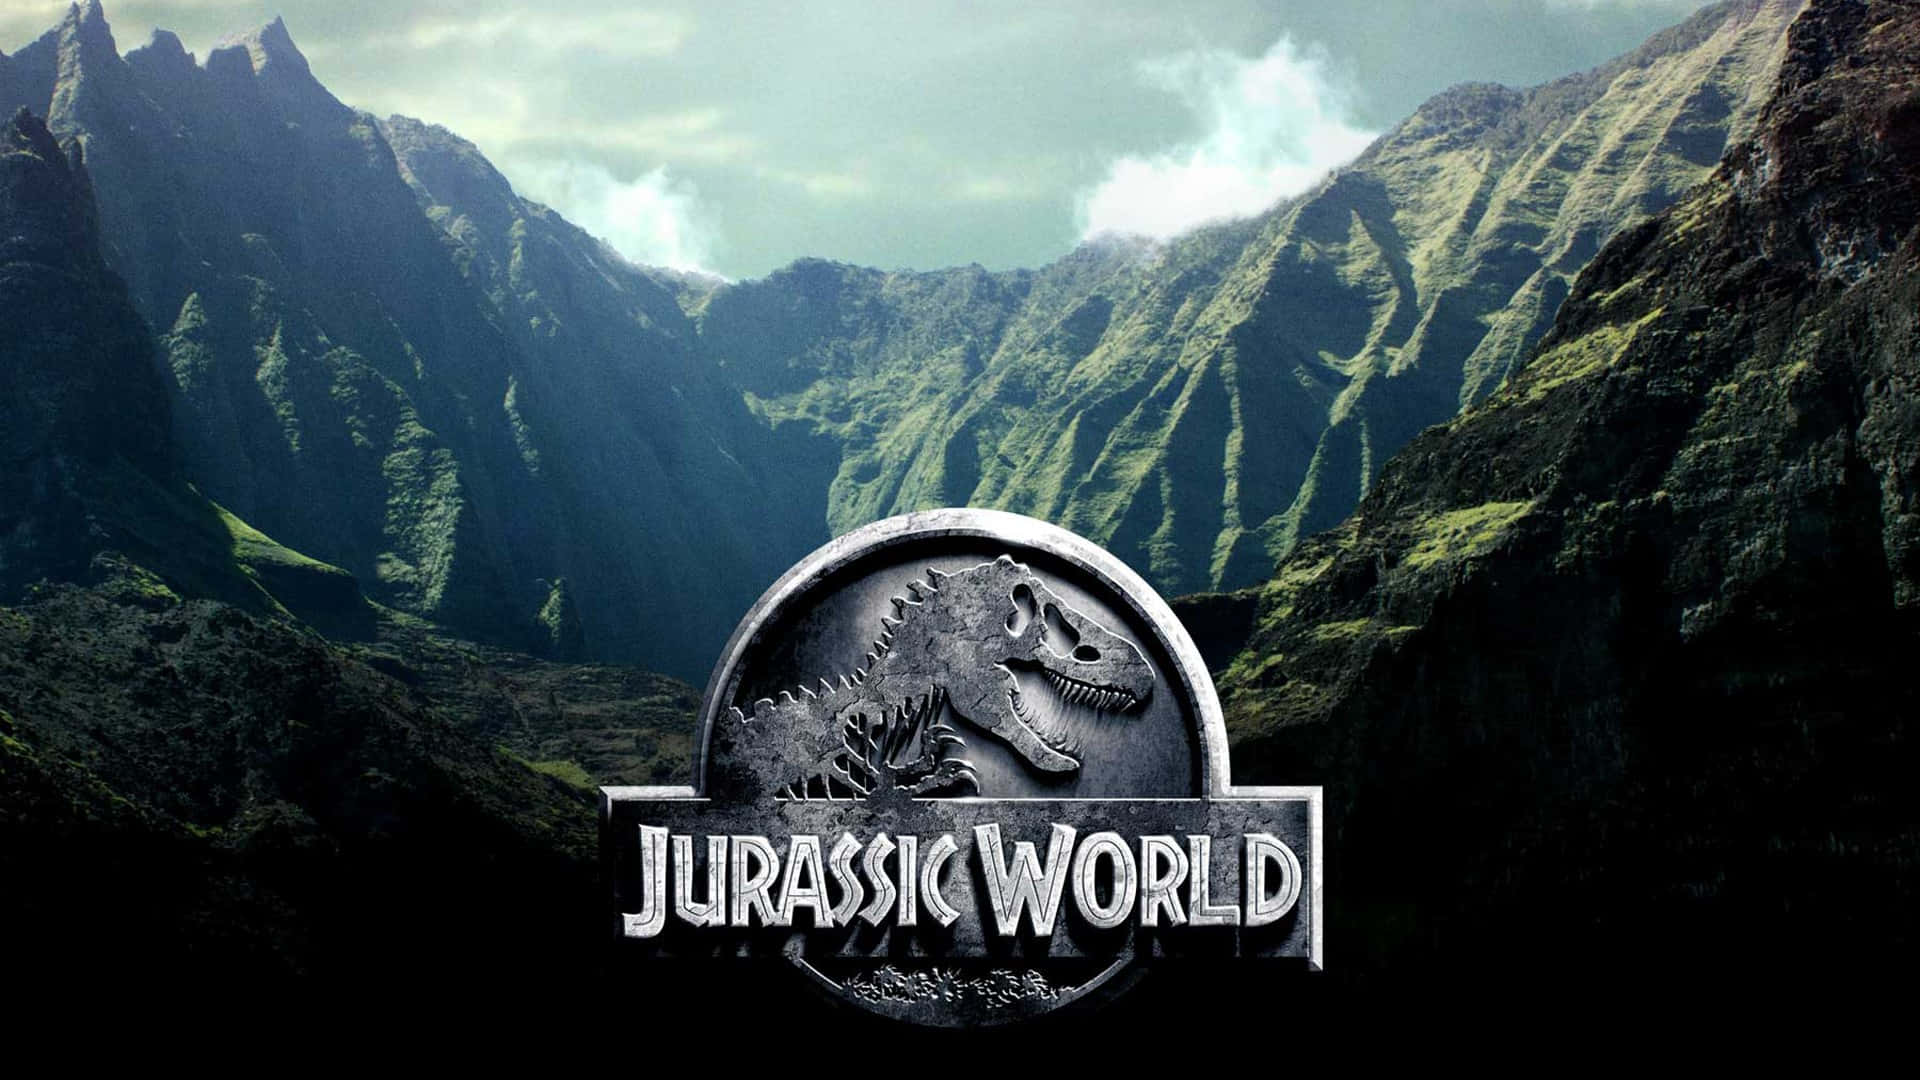 Jurassicworld-logo Mit Bergen Im Hintergrund